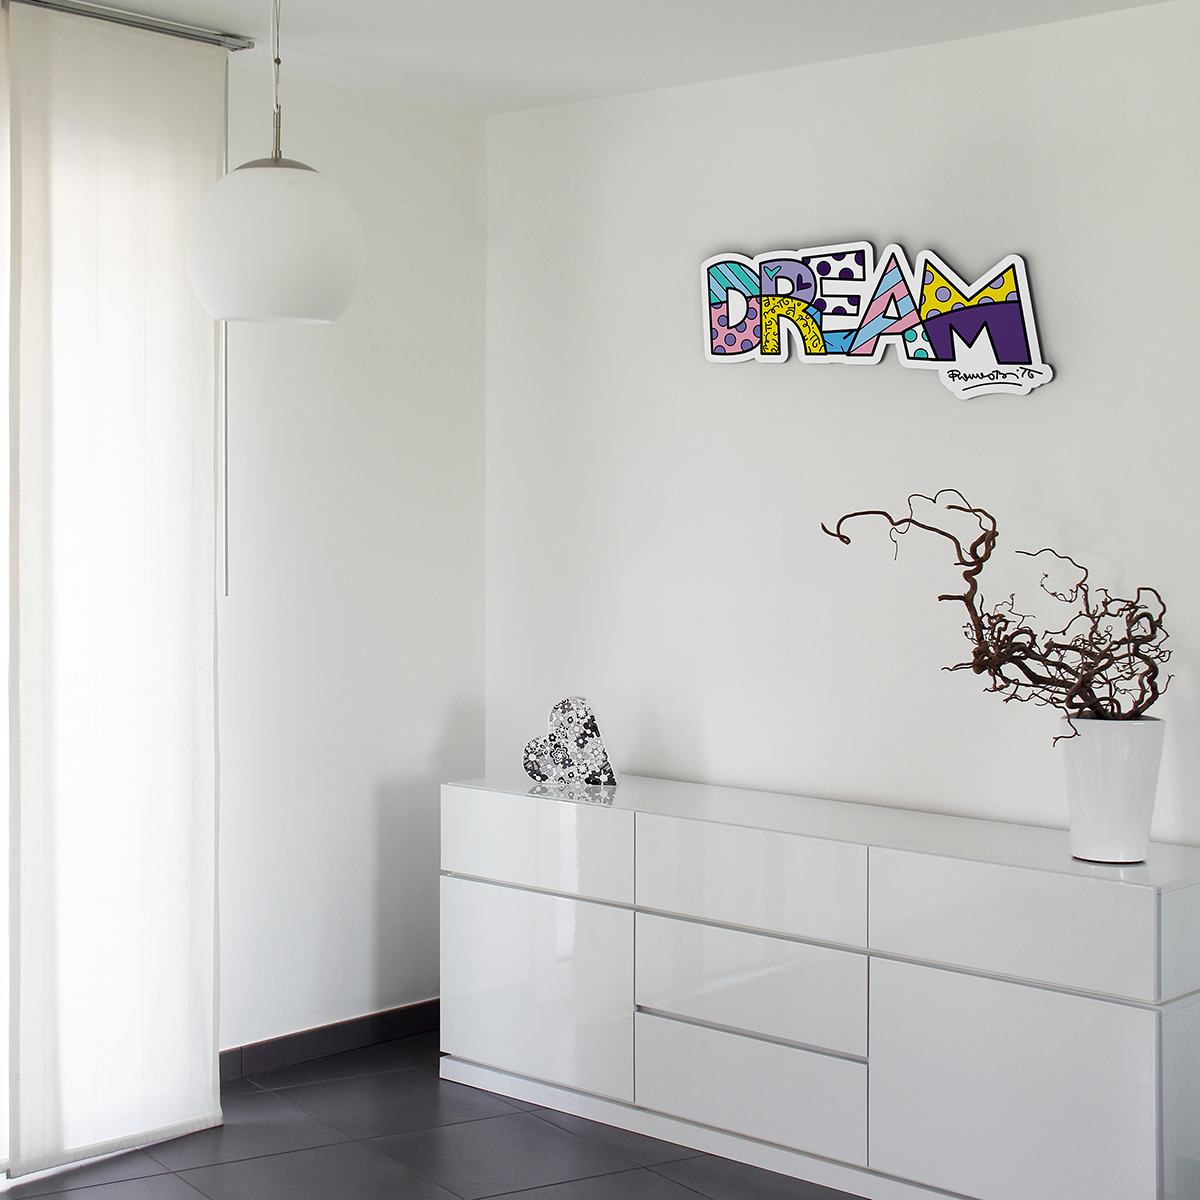 la scritta Dream a caratteri cubitali e decorata secondo lo stile pop fà risalto di sè su una parete bianca in un ambiente tutto bianco